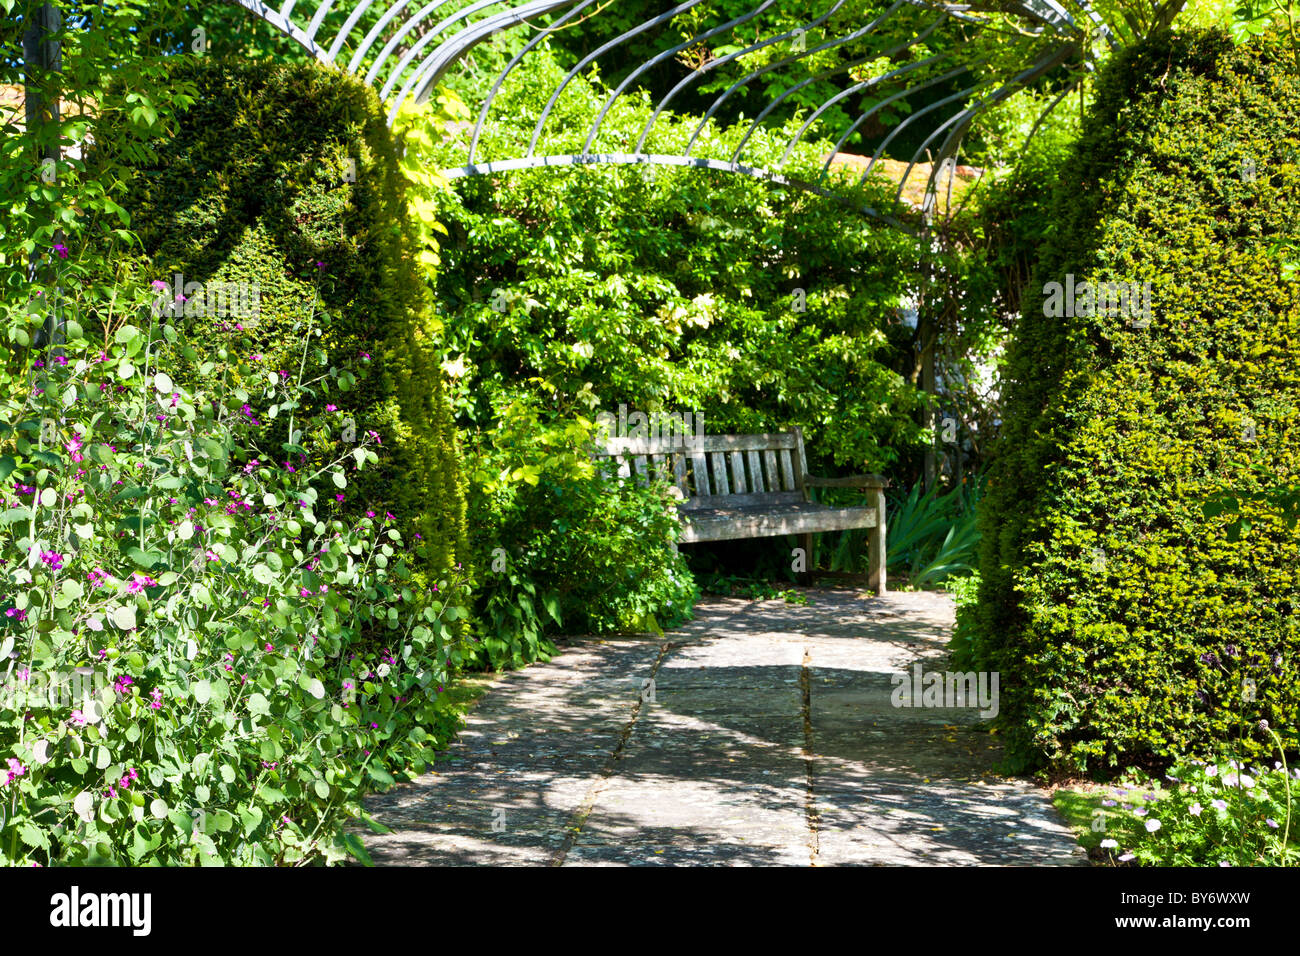 Sedile in legno o banco in un angolo ombreggiato sotto una pergola in un paese di lingua inglese giardino d'estate. Foto Stock